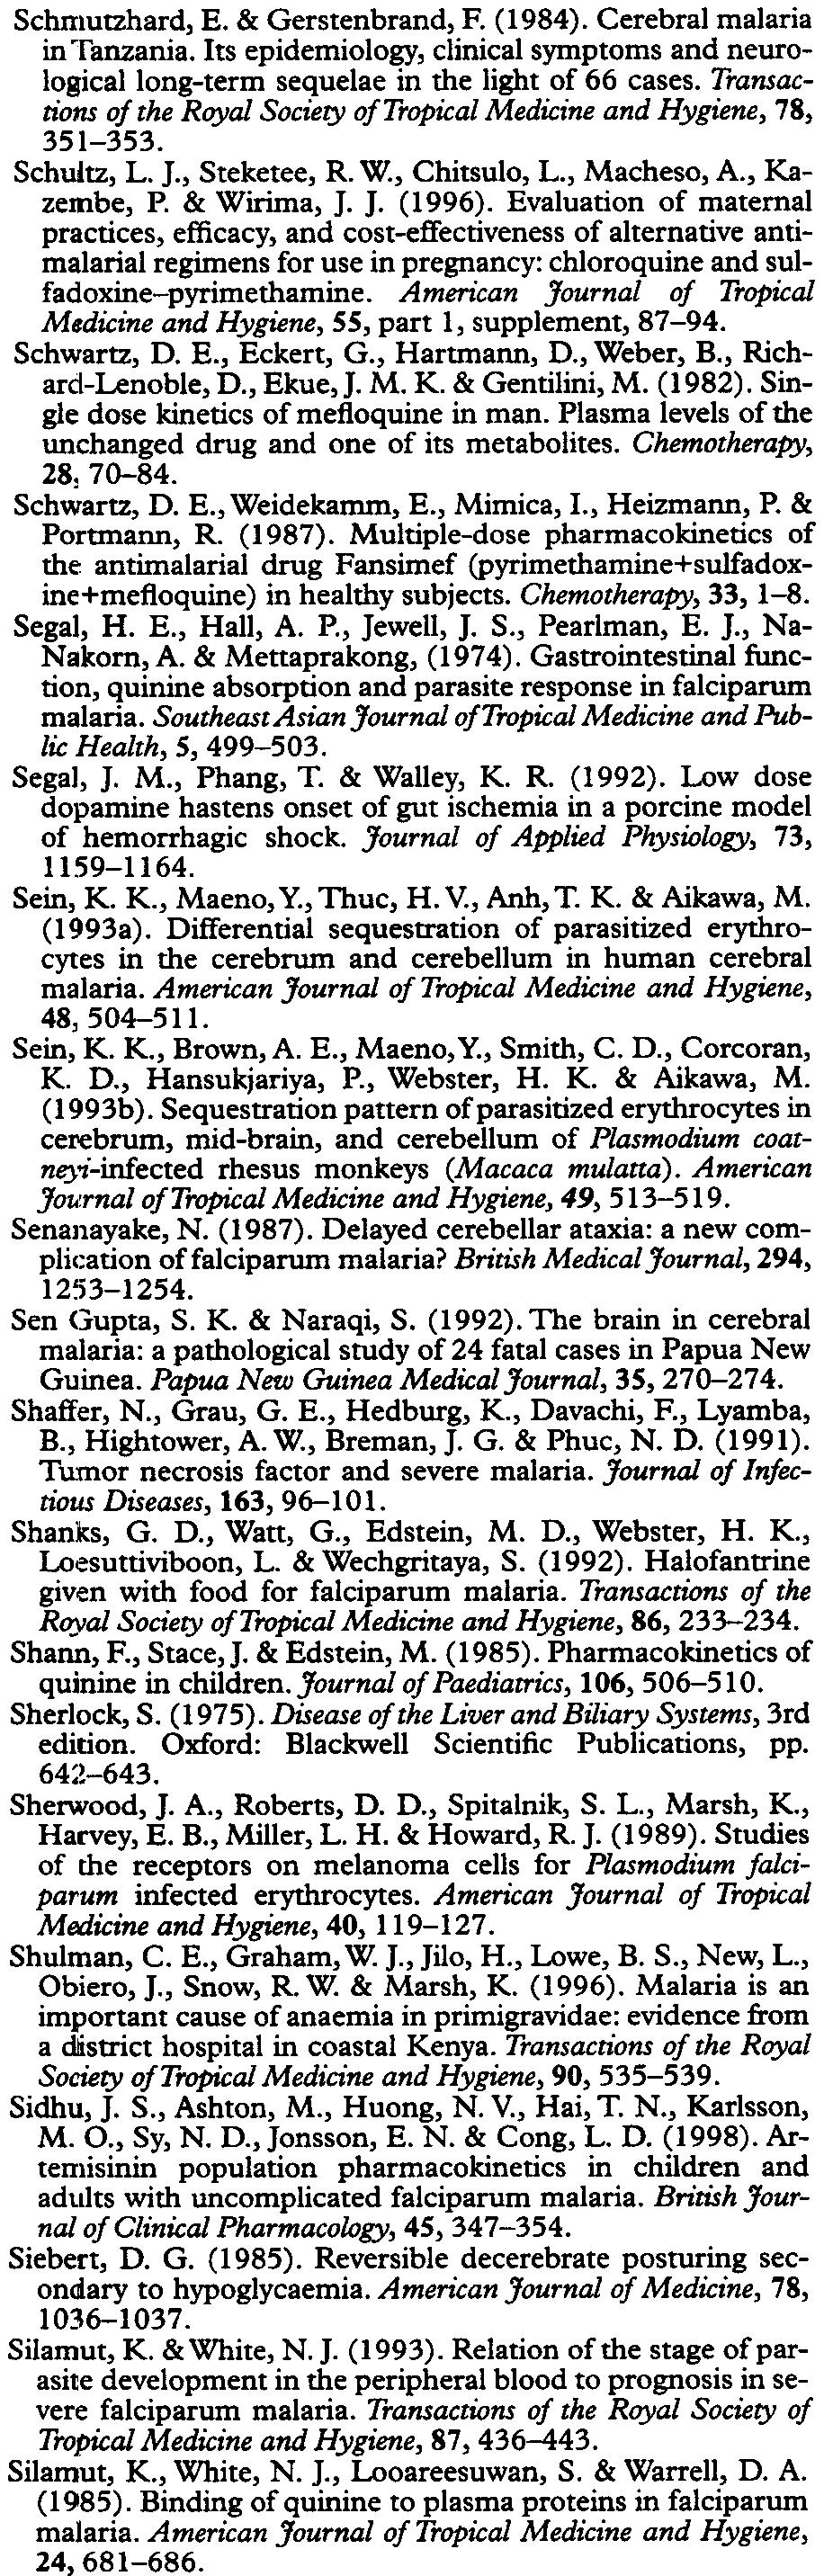 SI/86 SEVERE FALCIPARUM MALARIA Schnlutzhard, E. & Gerstenbrand, F. (1984). Cerebral malaria in Tanzania.